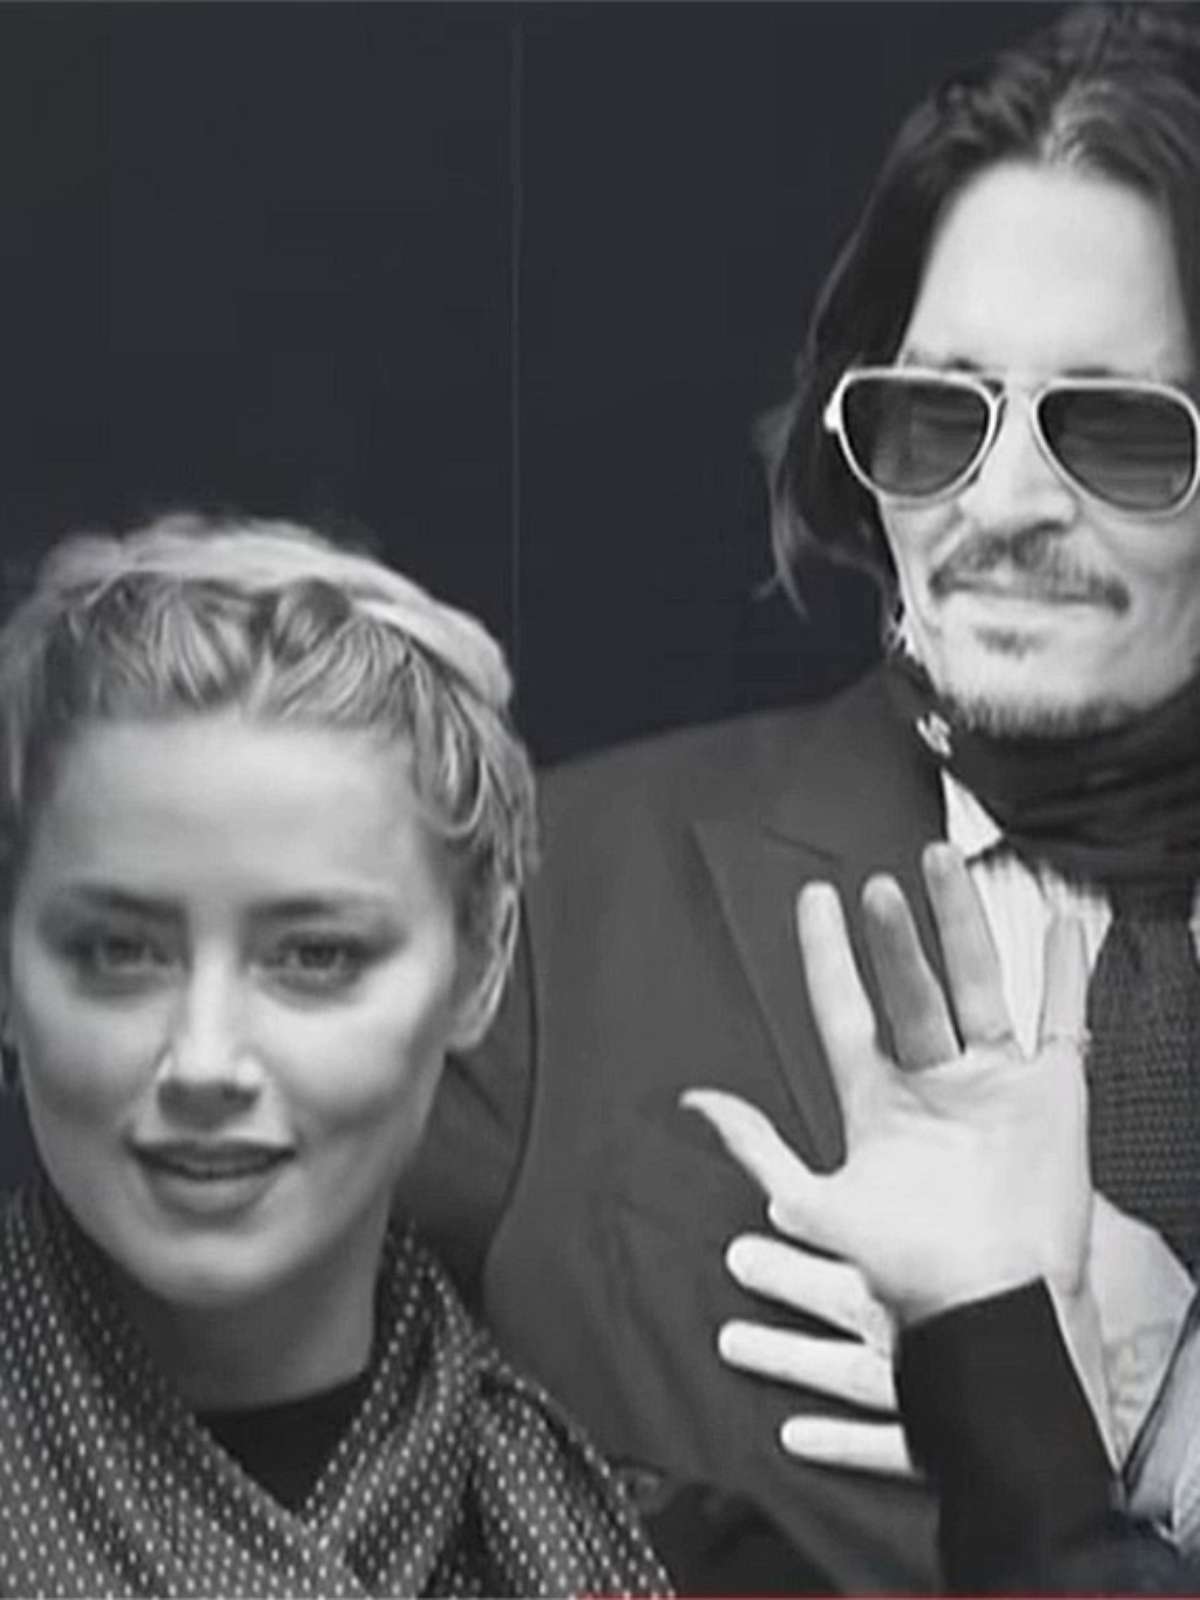 Advogada de Johnny Depp fala do impacto do caso no movimento Me too